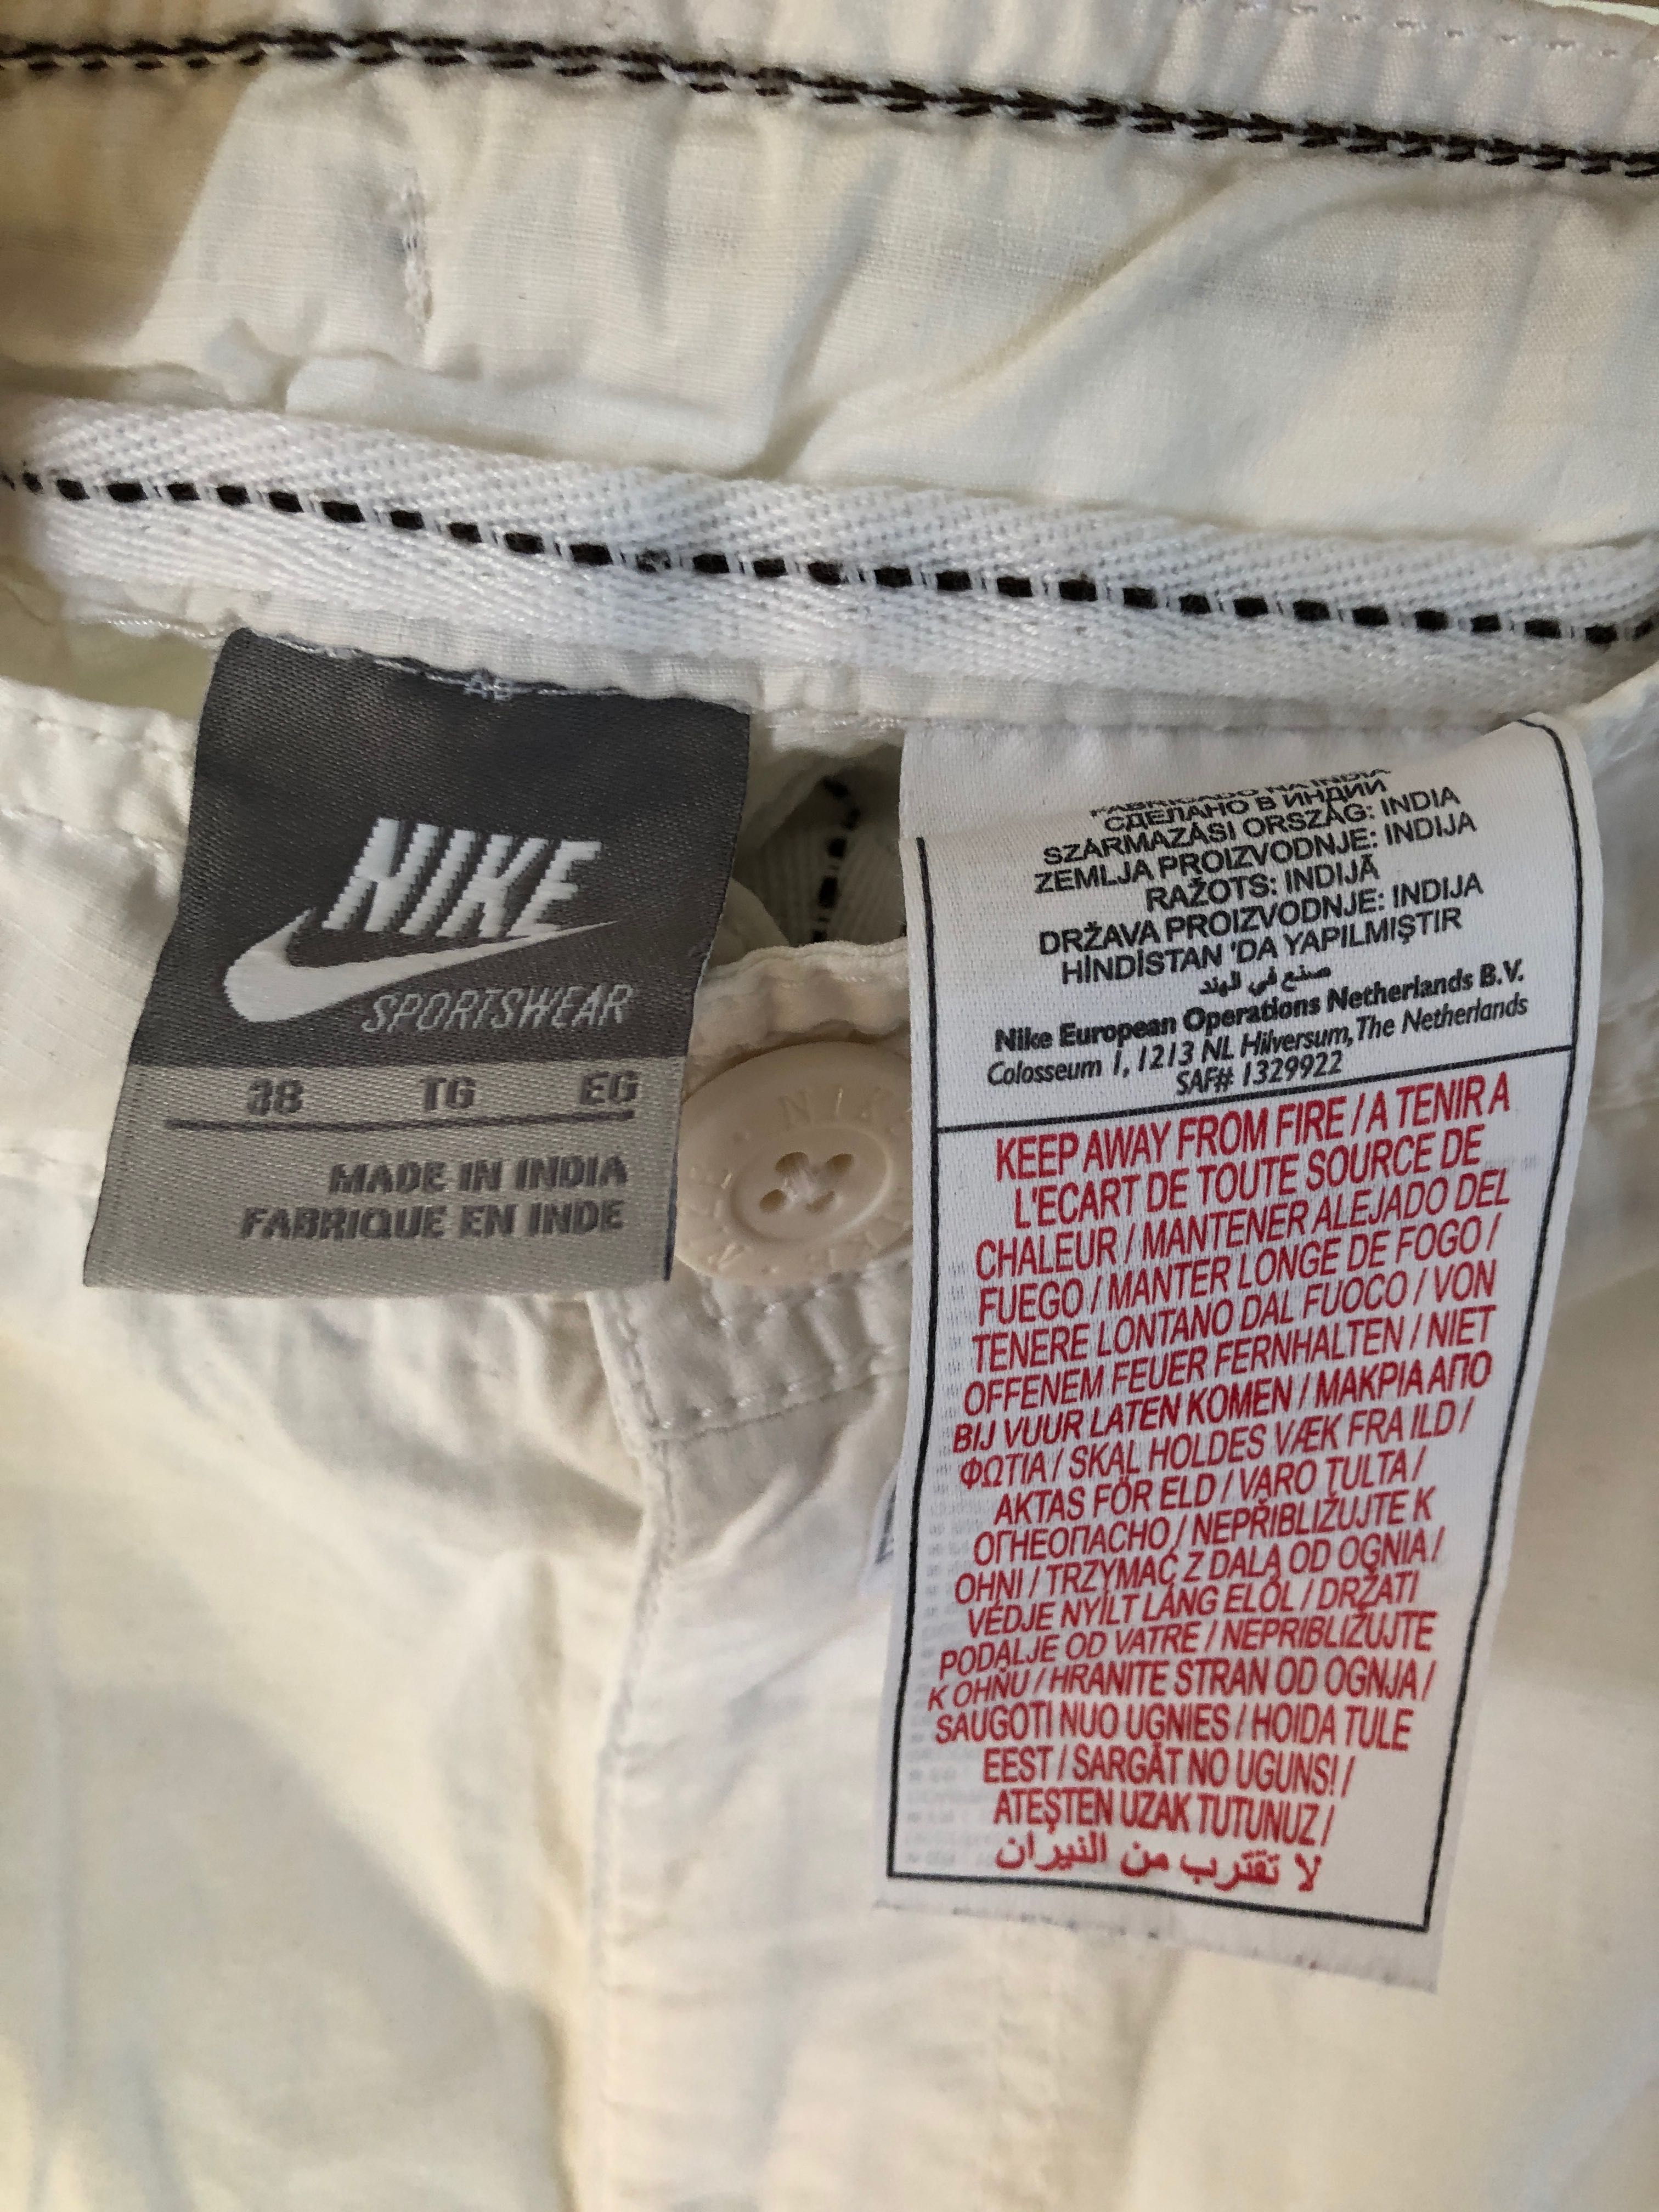 Чоловічі шорти Nike